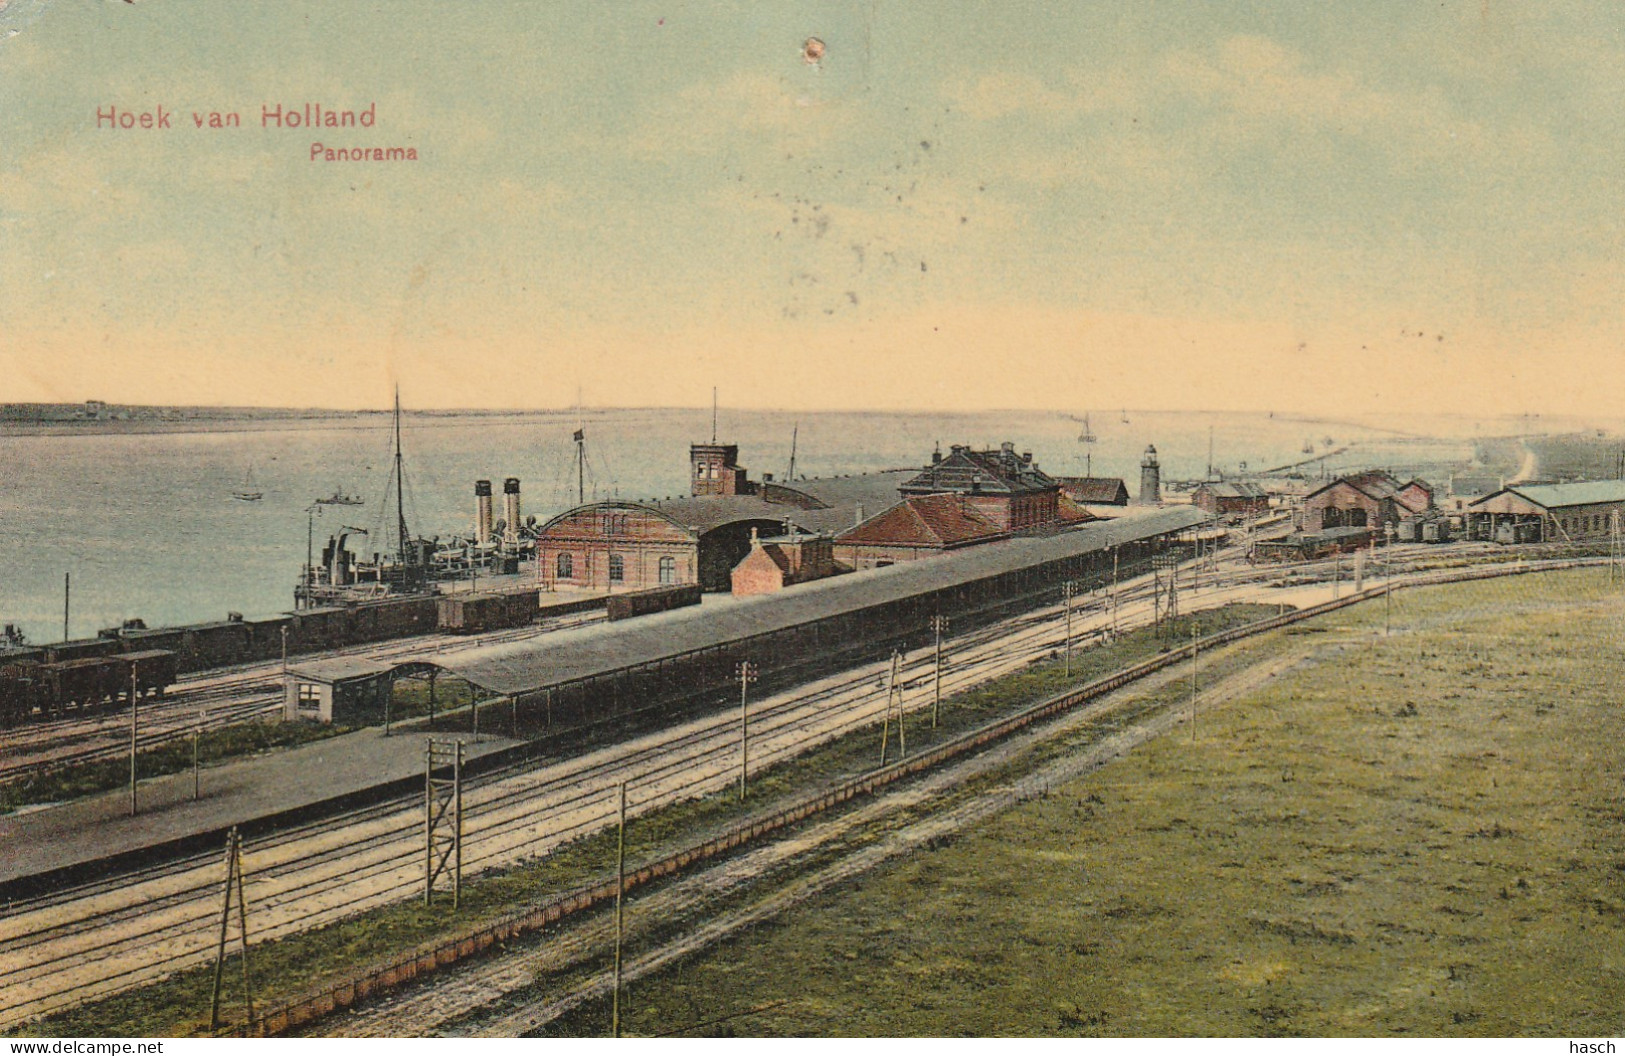 4893441Hoek Van Holland, Panorama. 1907. (Punaisegaatje)  - Hoek Van Holland